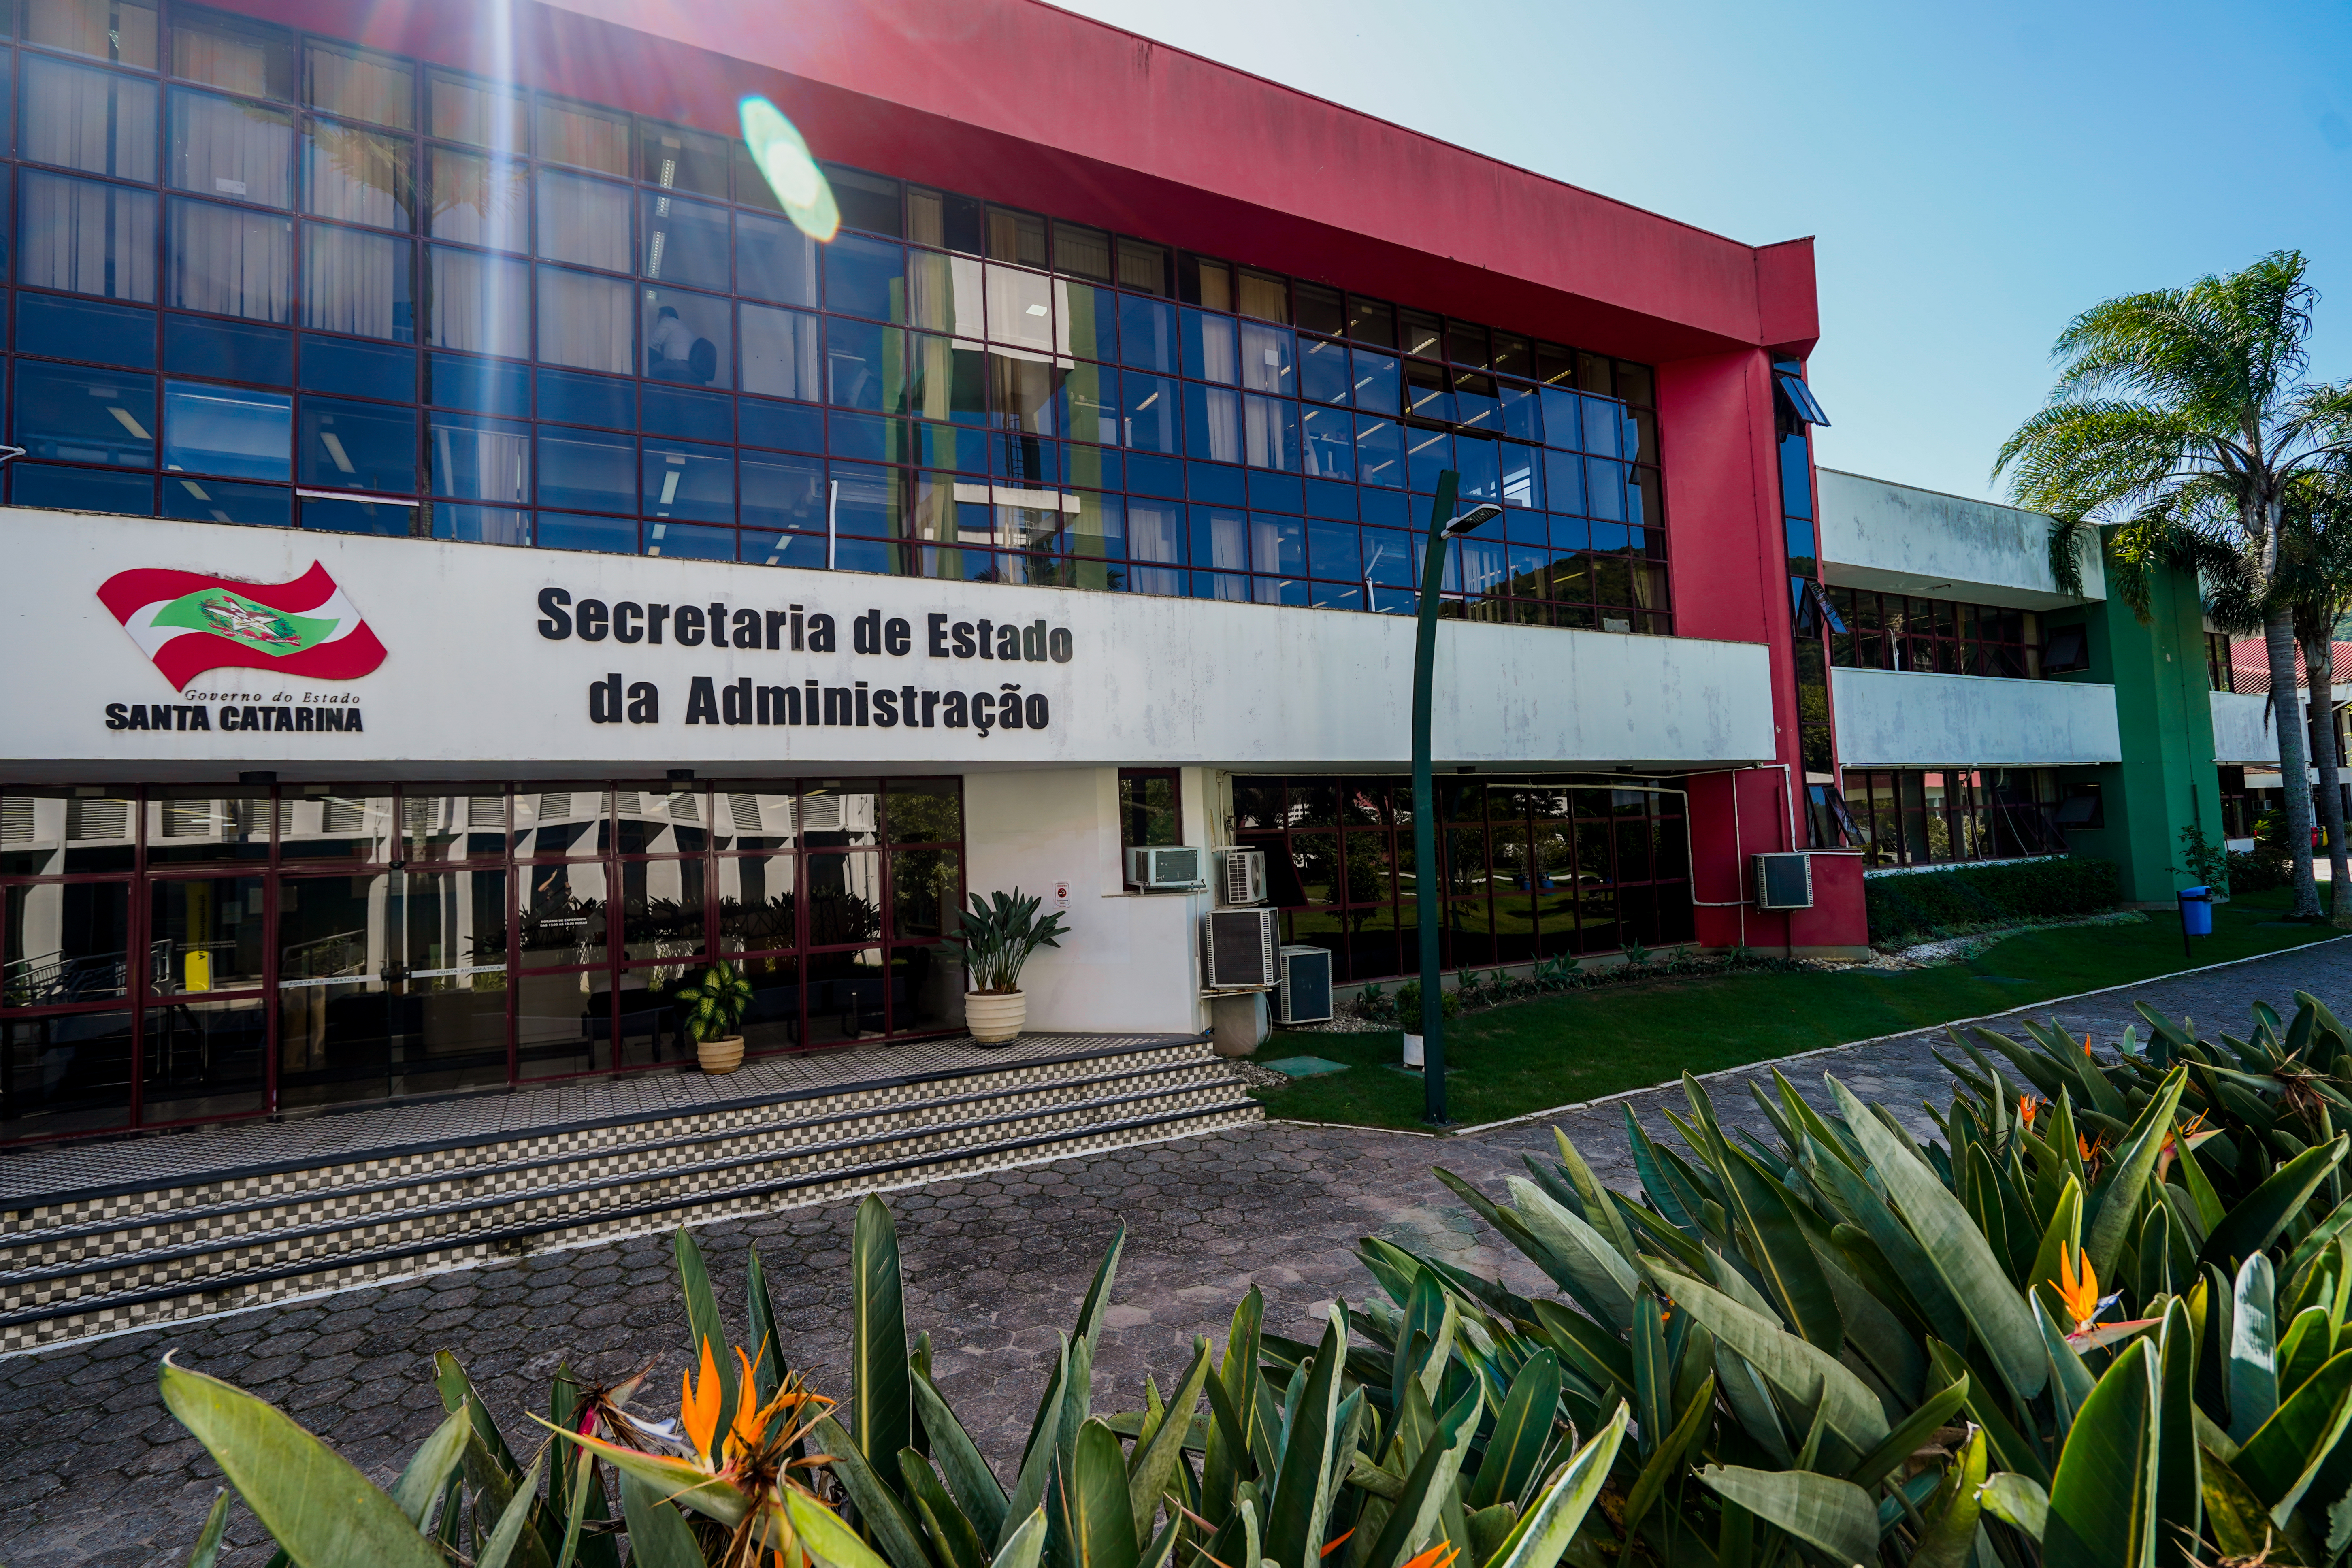 Fachada do prédio da Secretaria de Estado da Administração